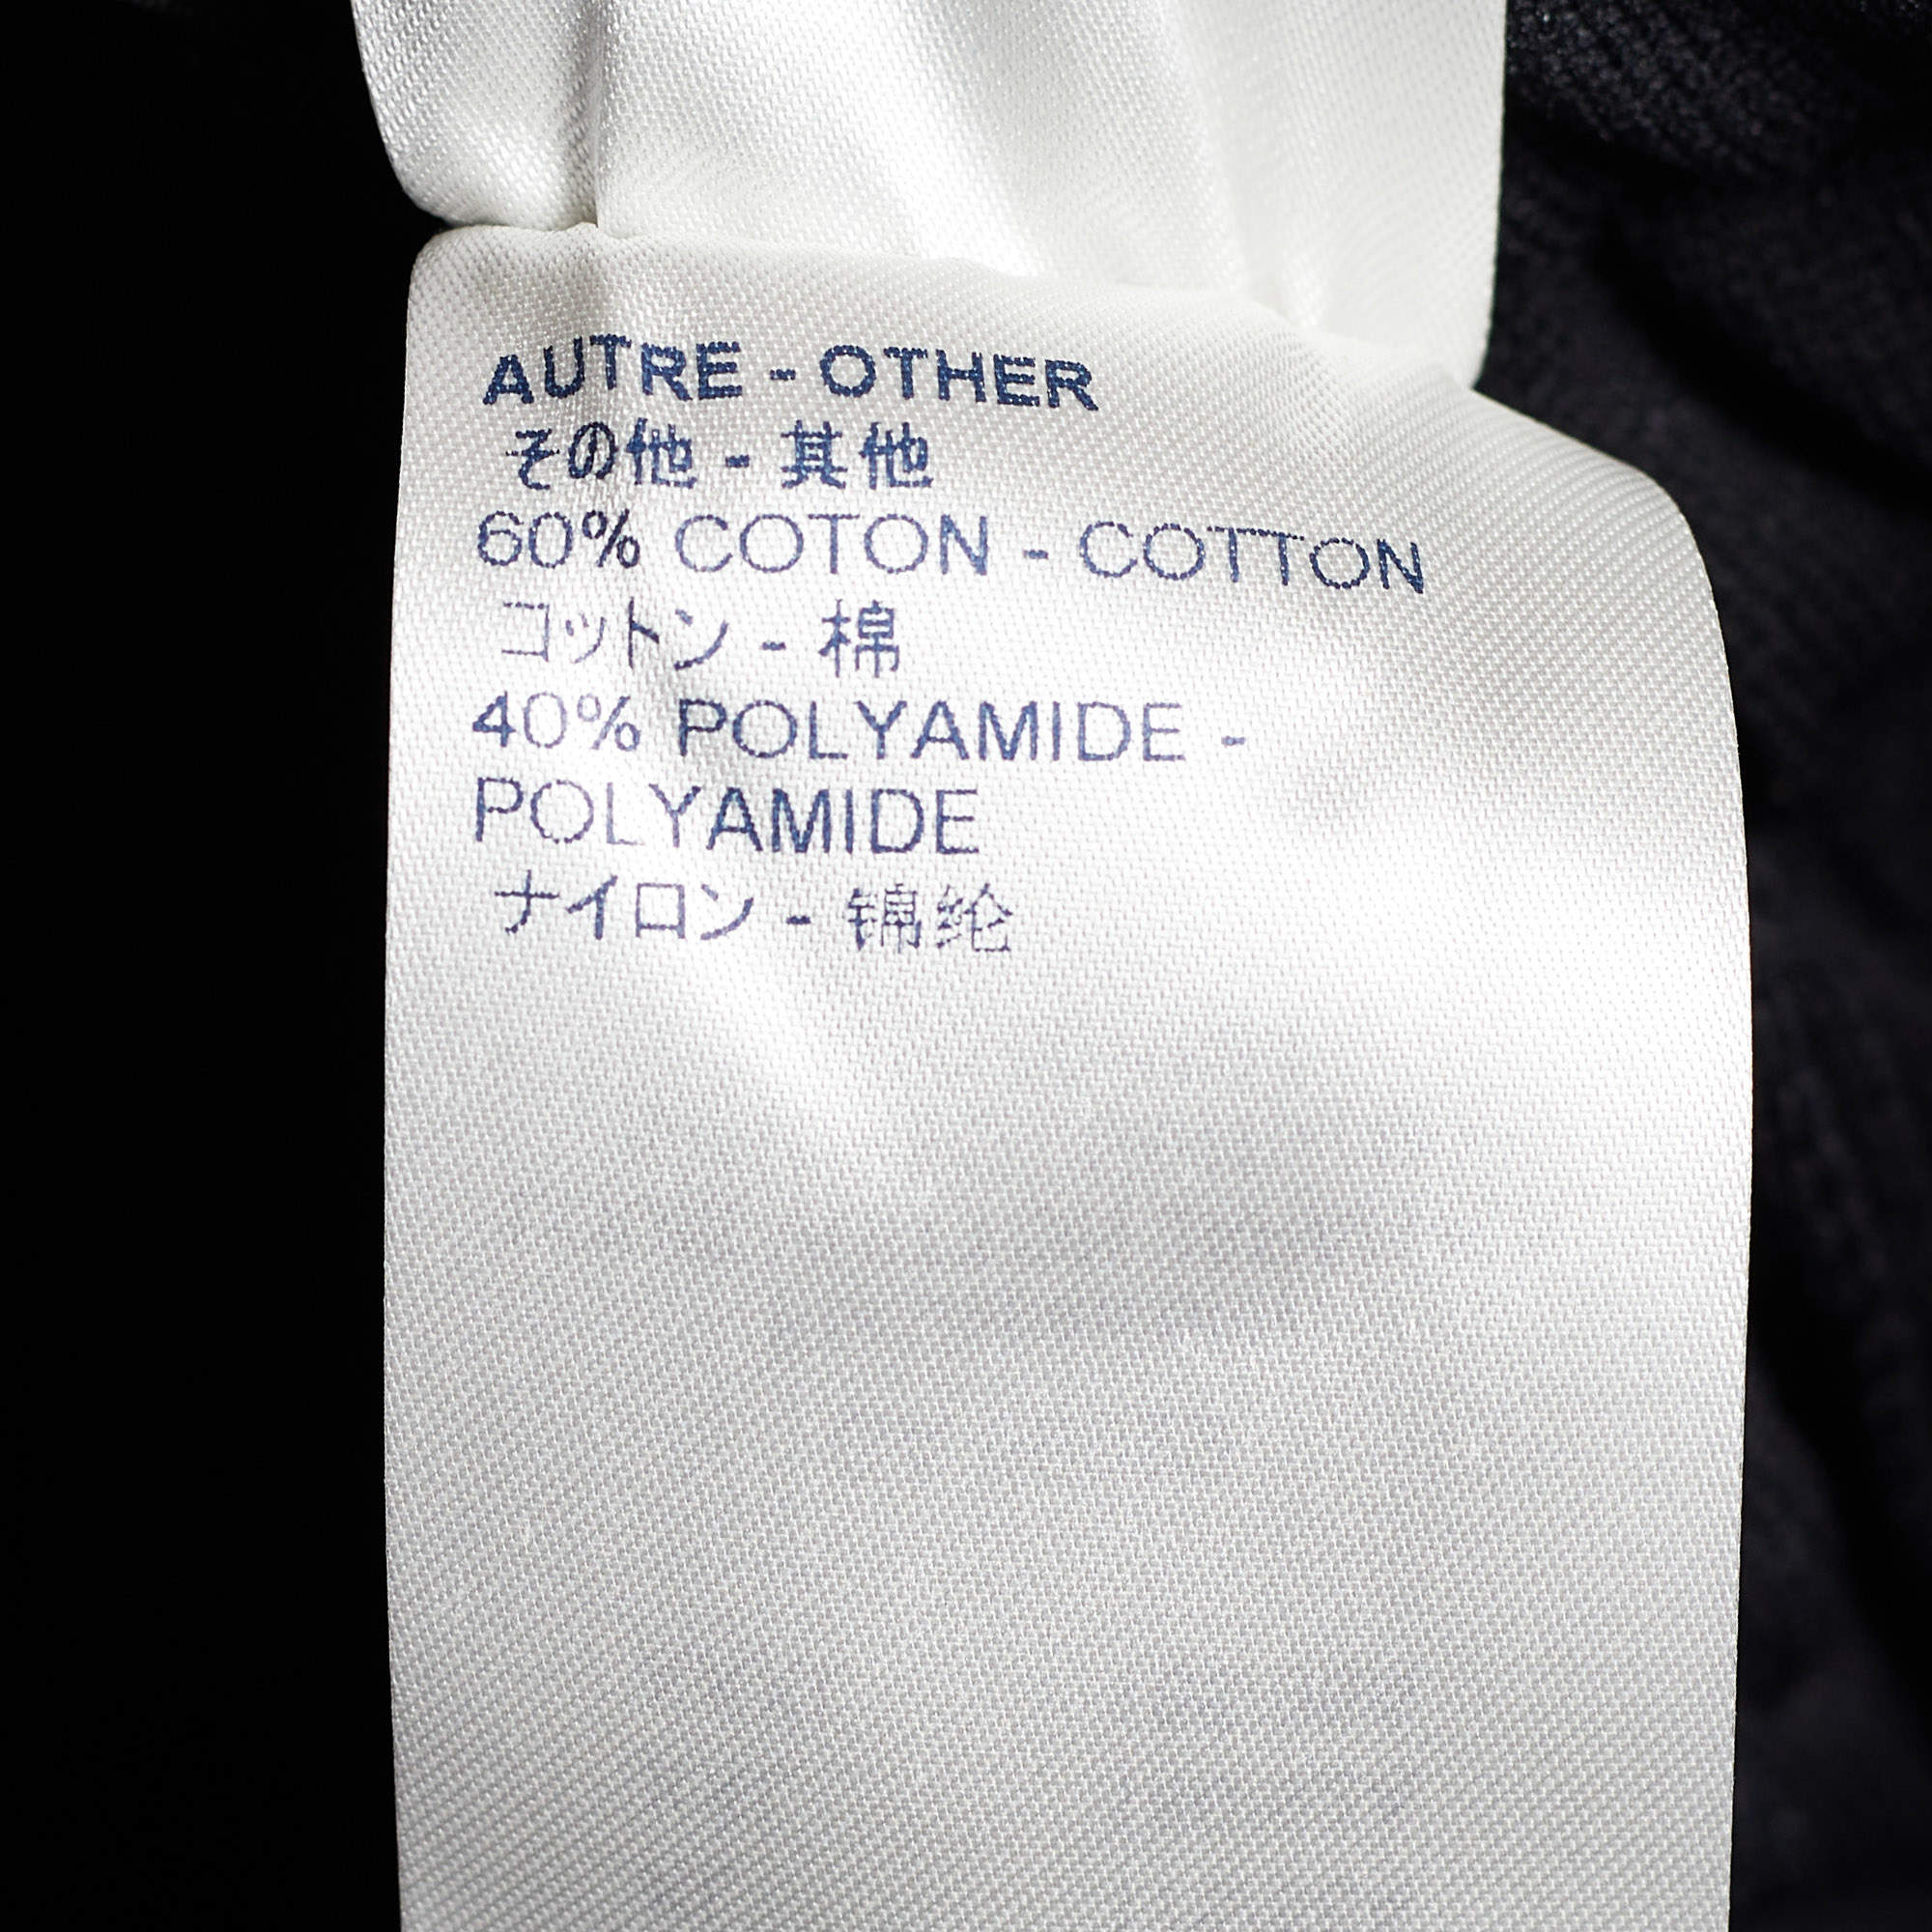 Louis Vuitton Black Quilted Plain Rainbow Zip Front Jacket XL Louis Vuitton